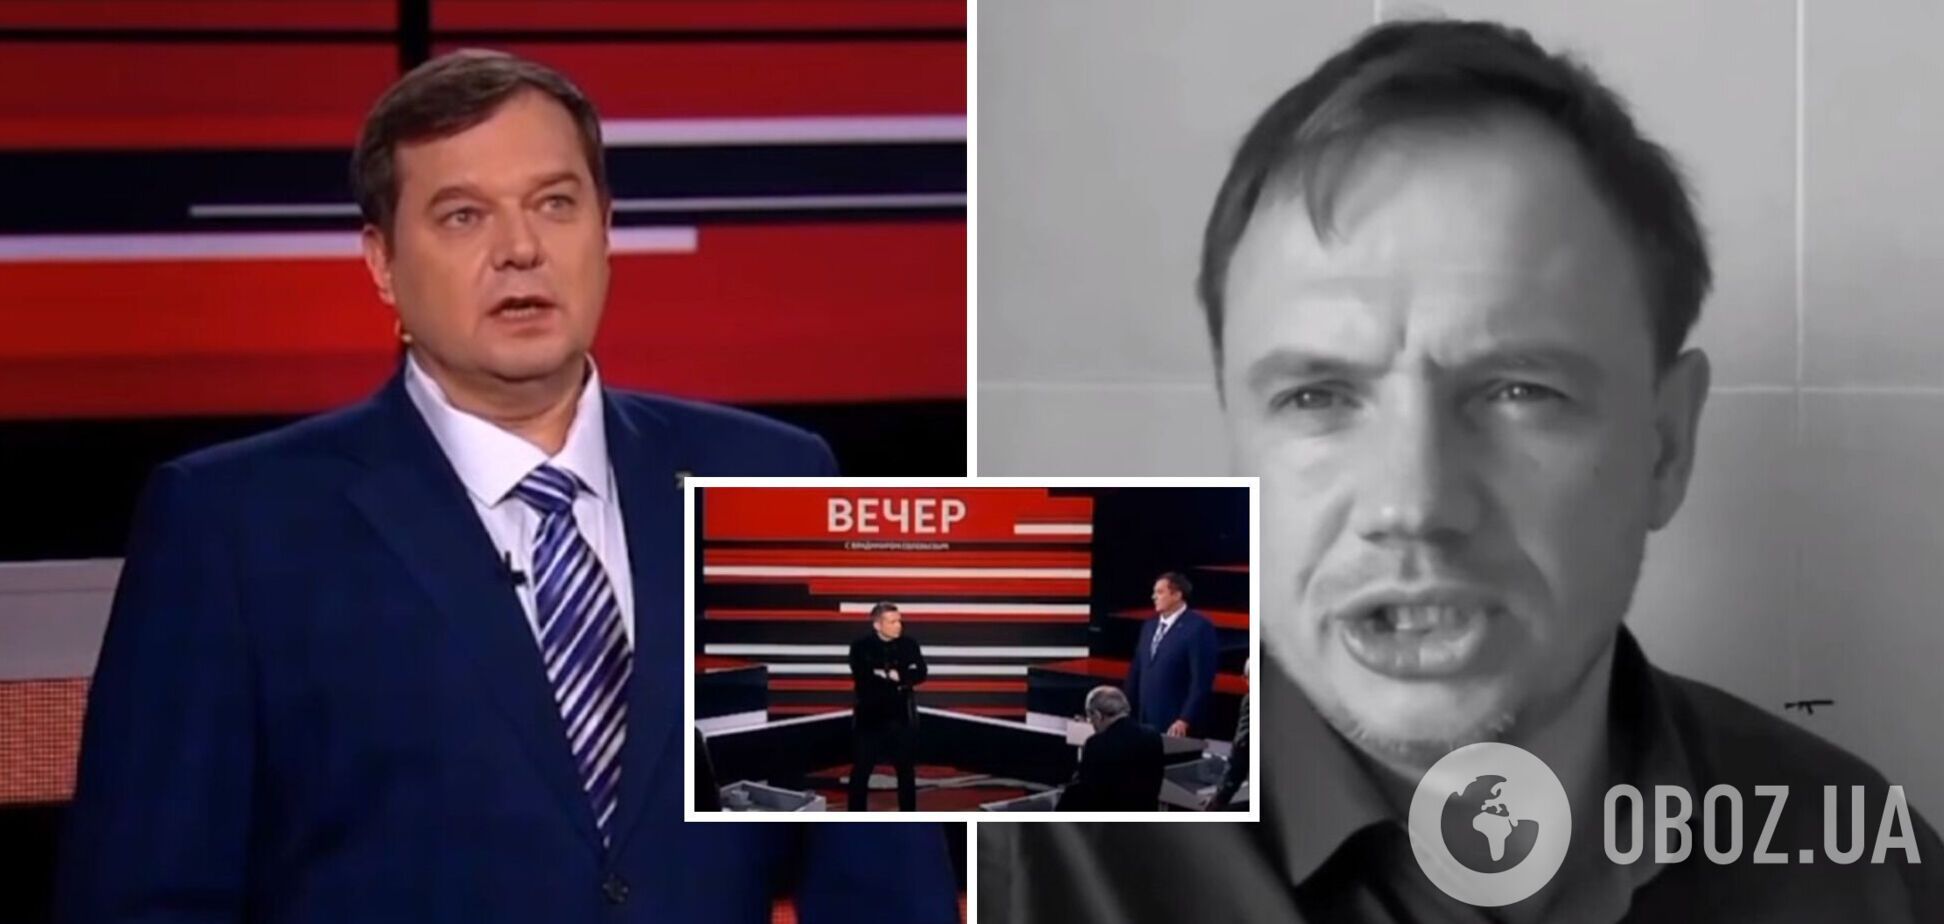 'Ніякої паніки немає': гауляйтер Балицький на російському шоу повторив 'шпаргалку' Стремоусова. Відео